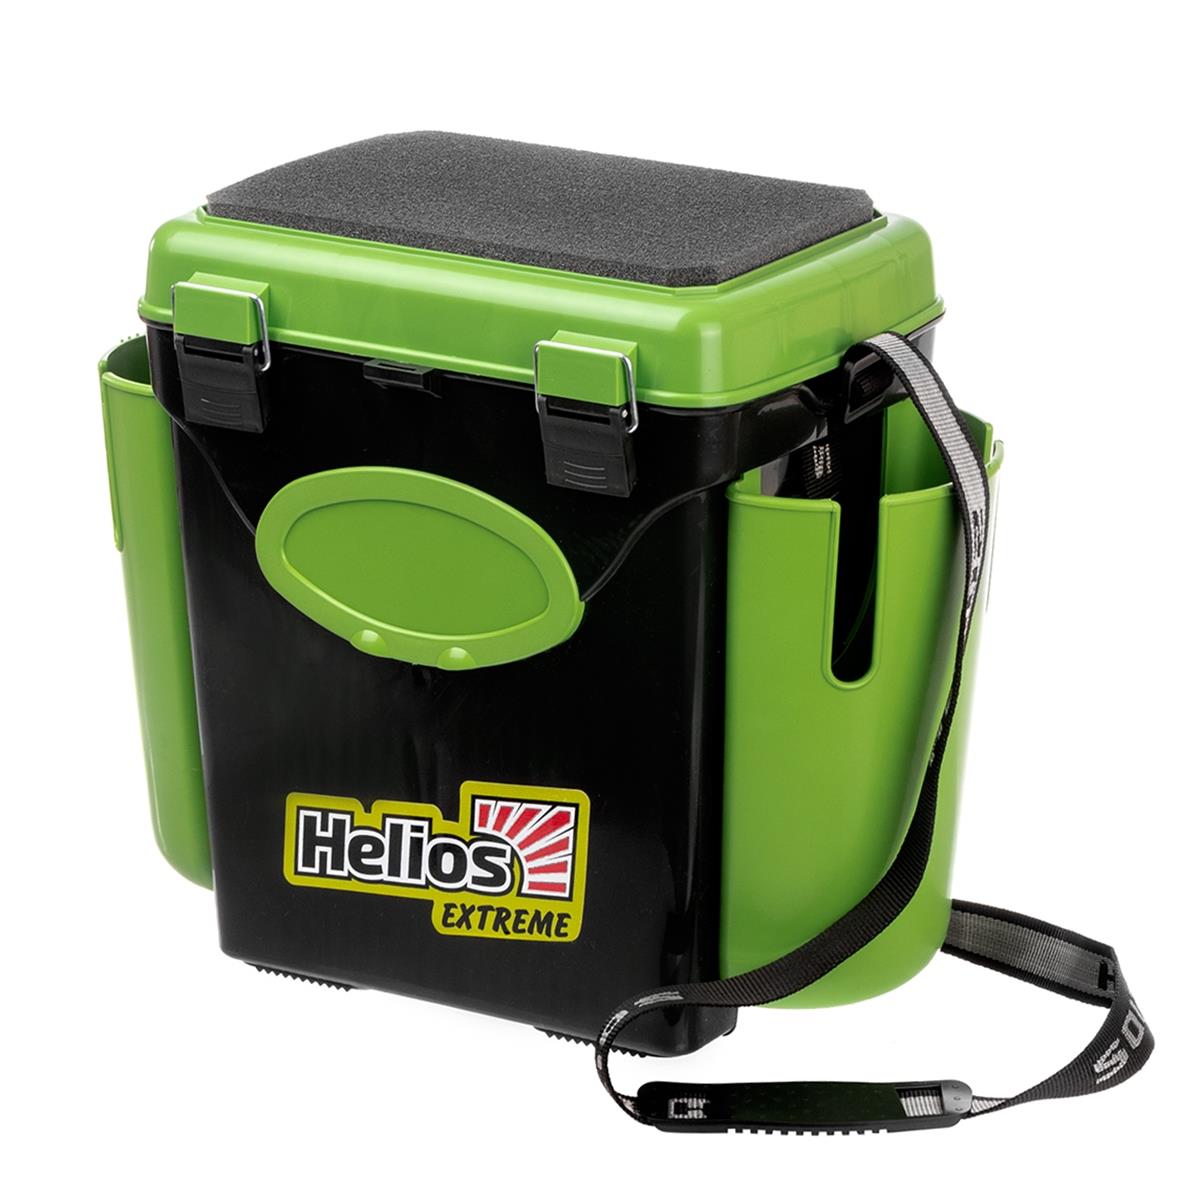 Ящик FishBox односекционный 10л зеленый Helios универсальный ящик для хранения вещей рыжий кот